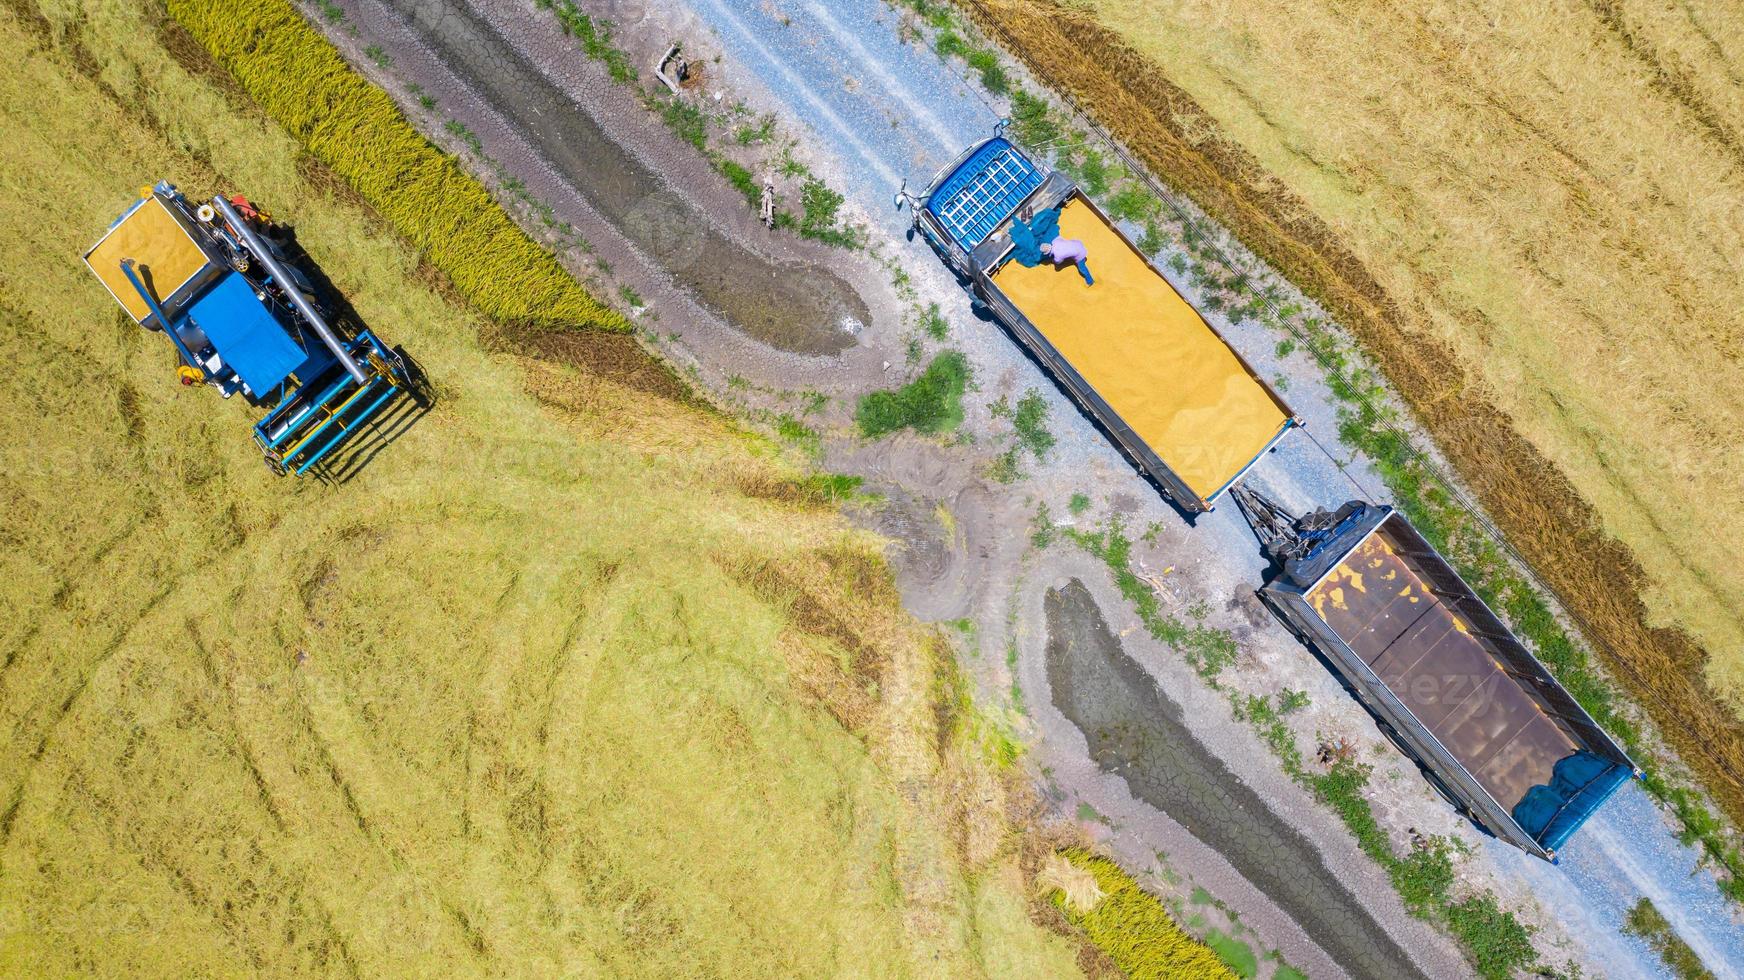 Vista aérea superior de la máquina cosechadora y el camión que trabaja en el campo de arroz, vista desde arriba foto